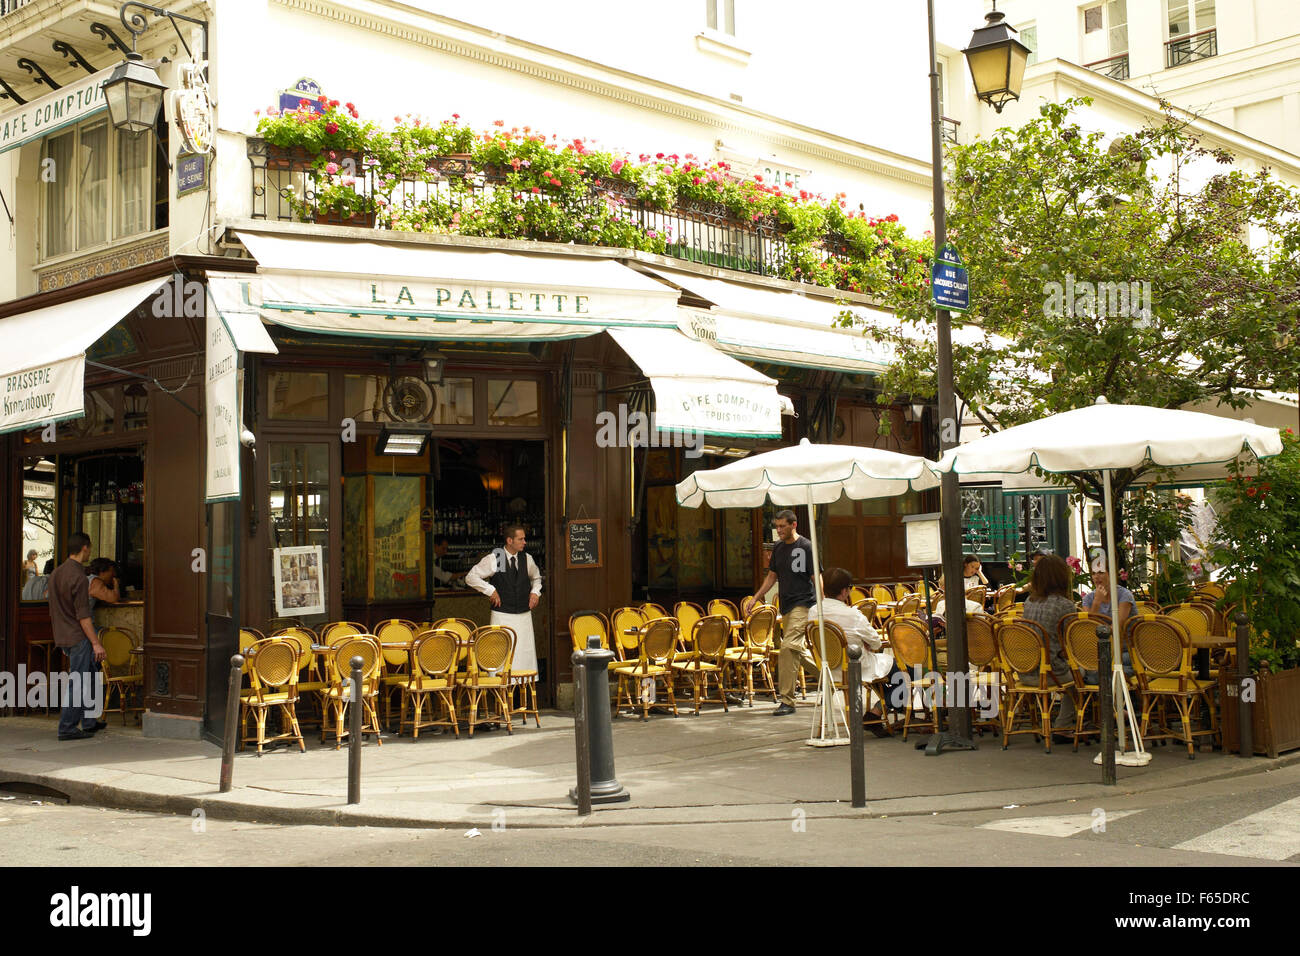 Saint-Germain-des-Pres Cafe in Paris, France Stock Photo